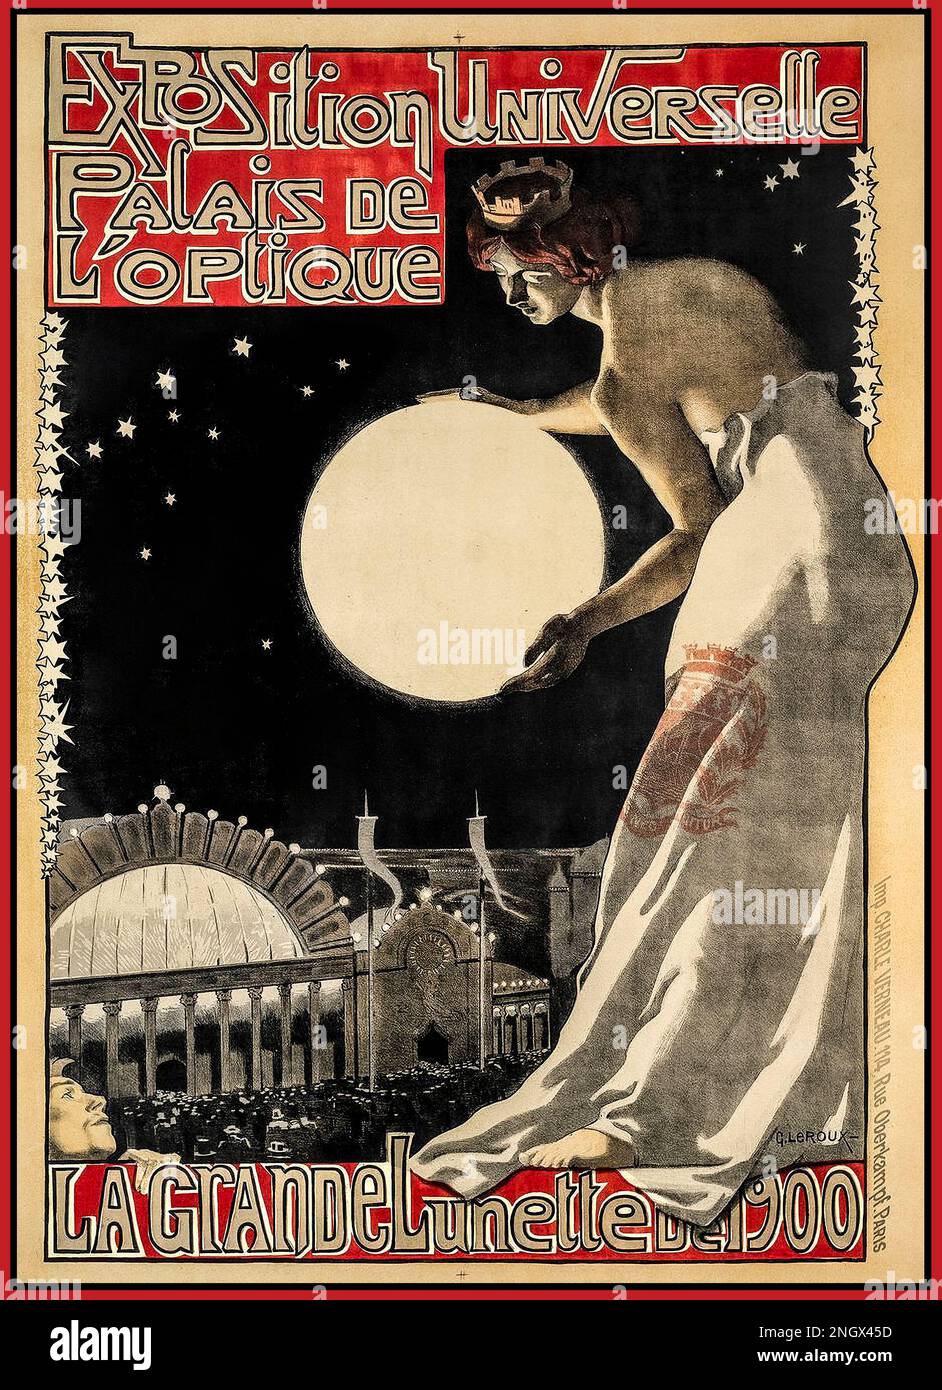 Exposition d'affiche française vintage universelle, la Grande Lunette de 1900, Palais de l'optique Paris France Banque D'Images